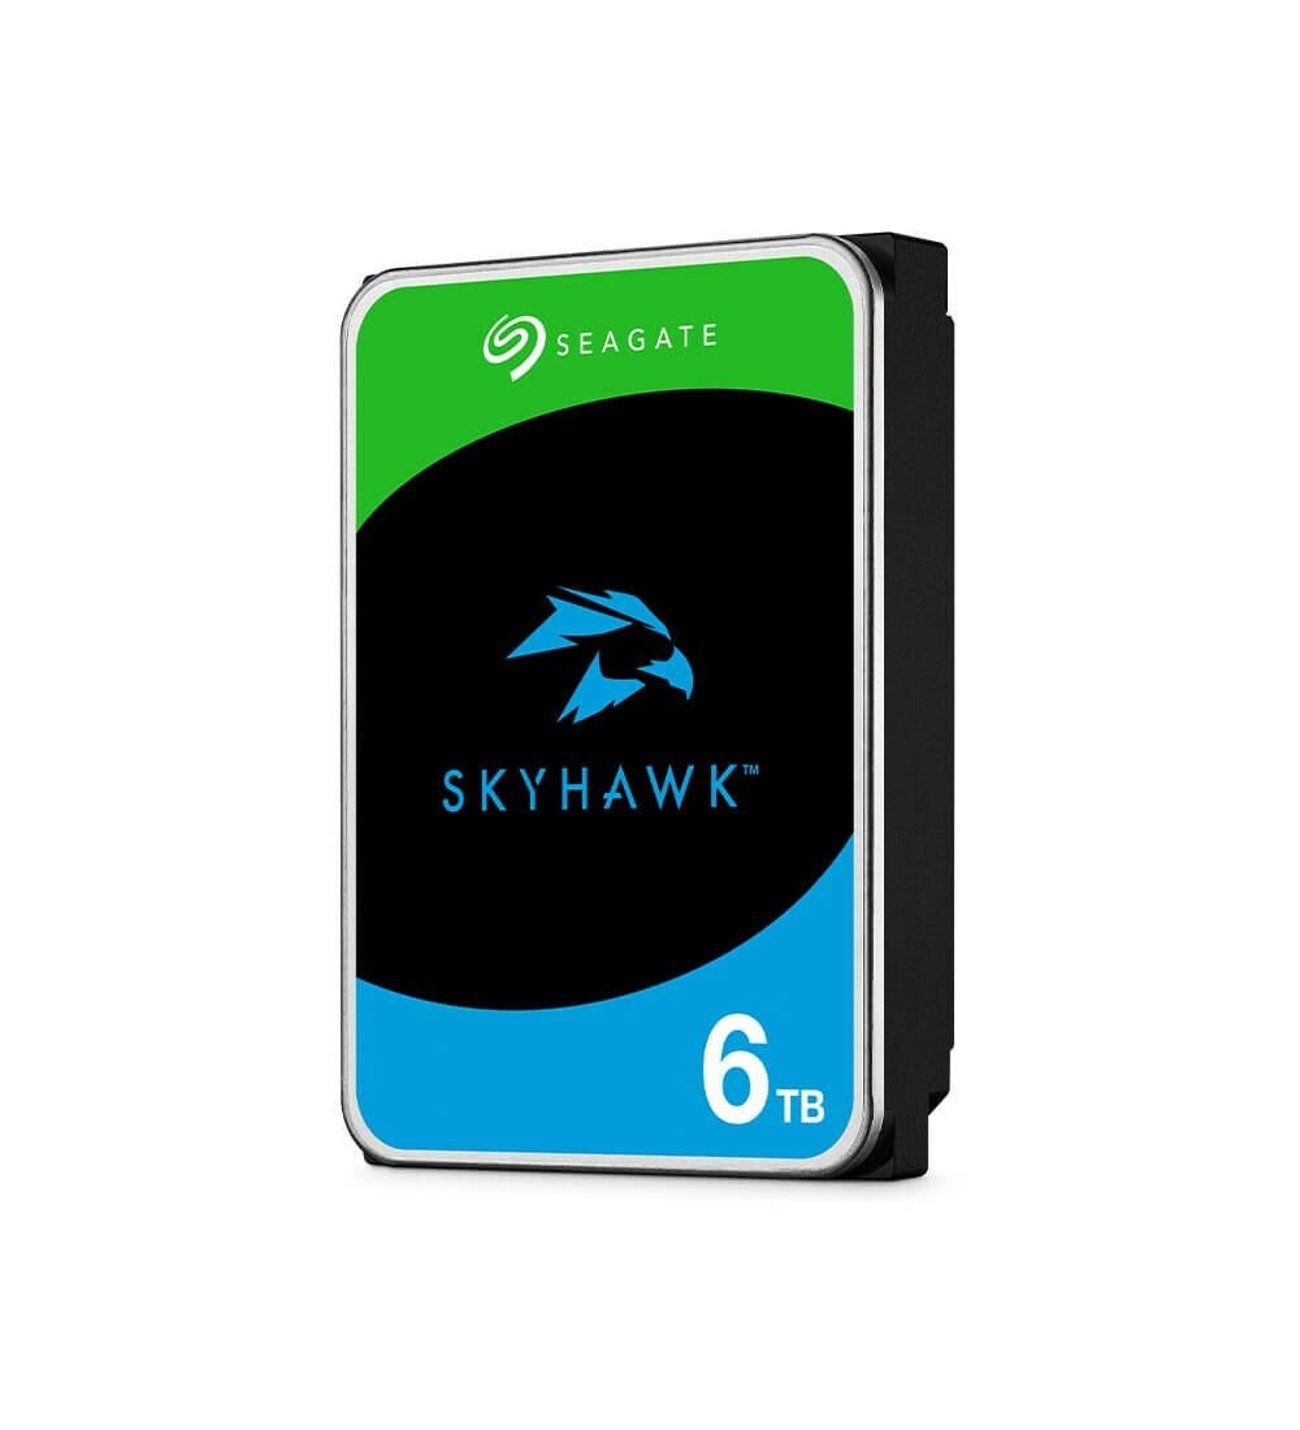 Seagate SkyHawk 6TB 5400RPM 256MB ST6000VX009 7/24 Güvenlik Diski